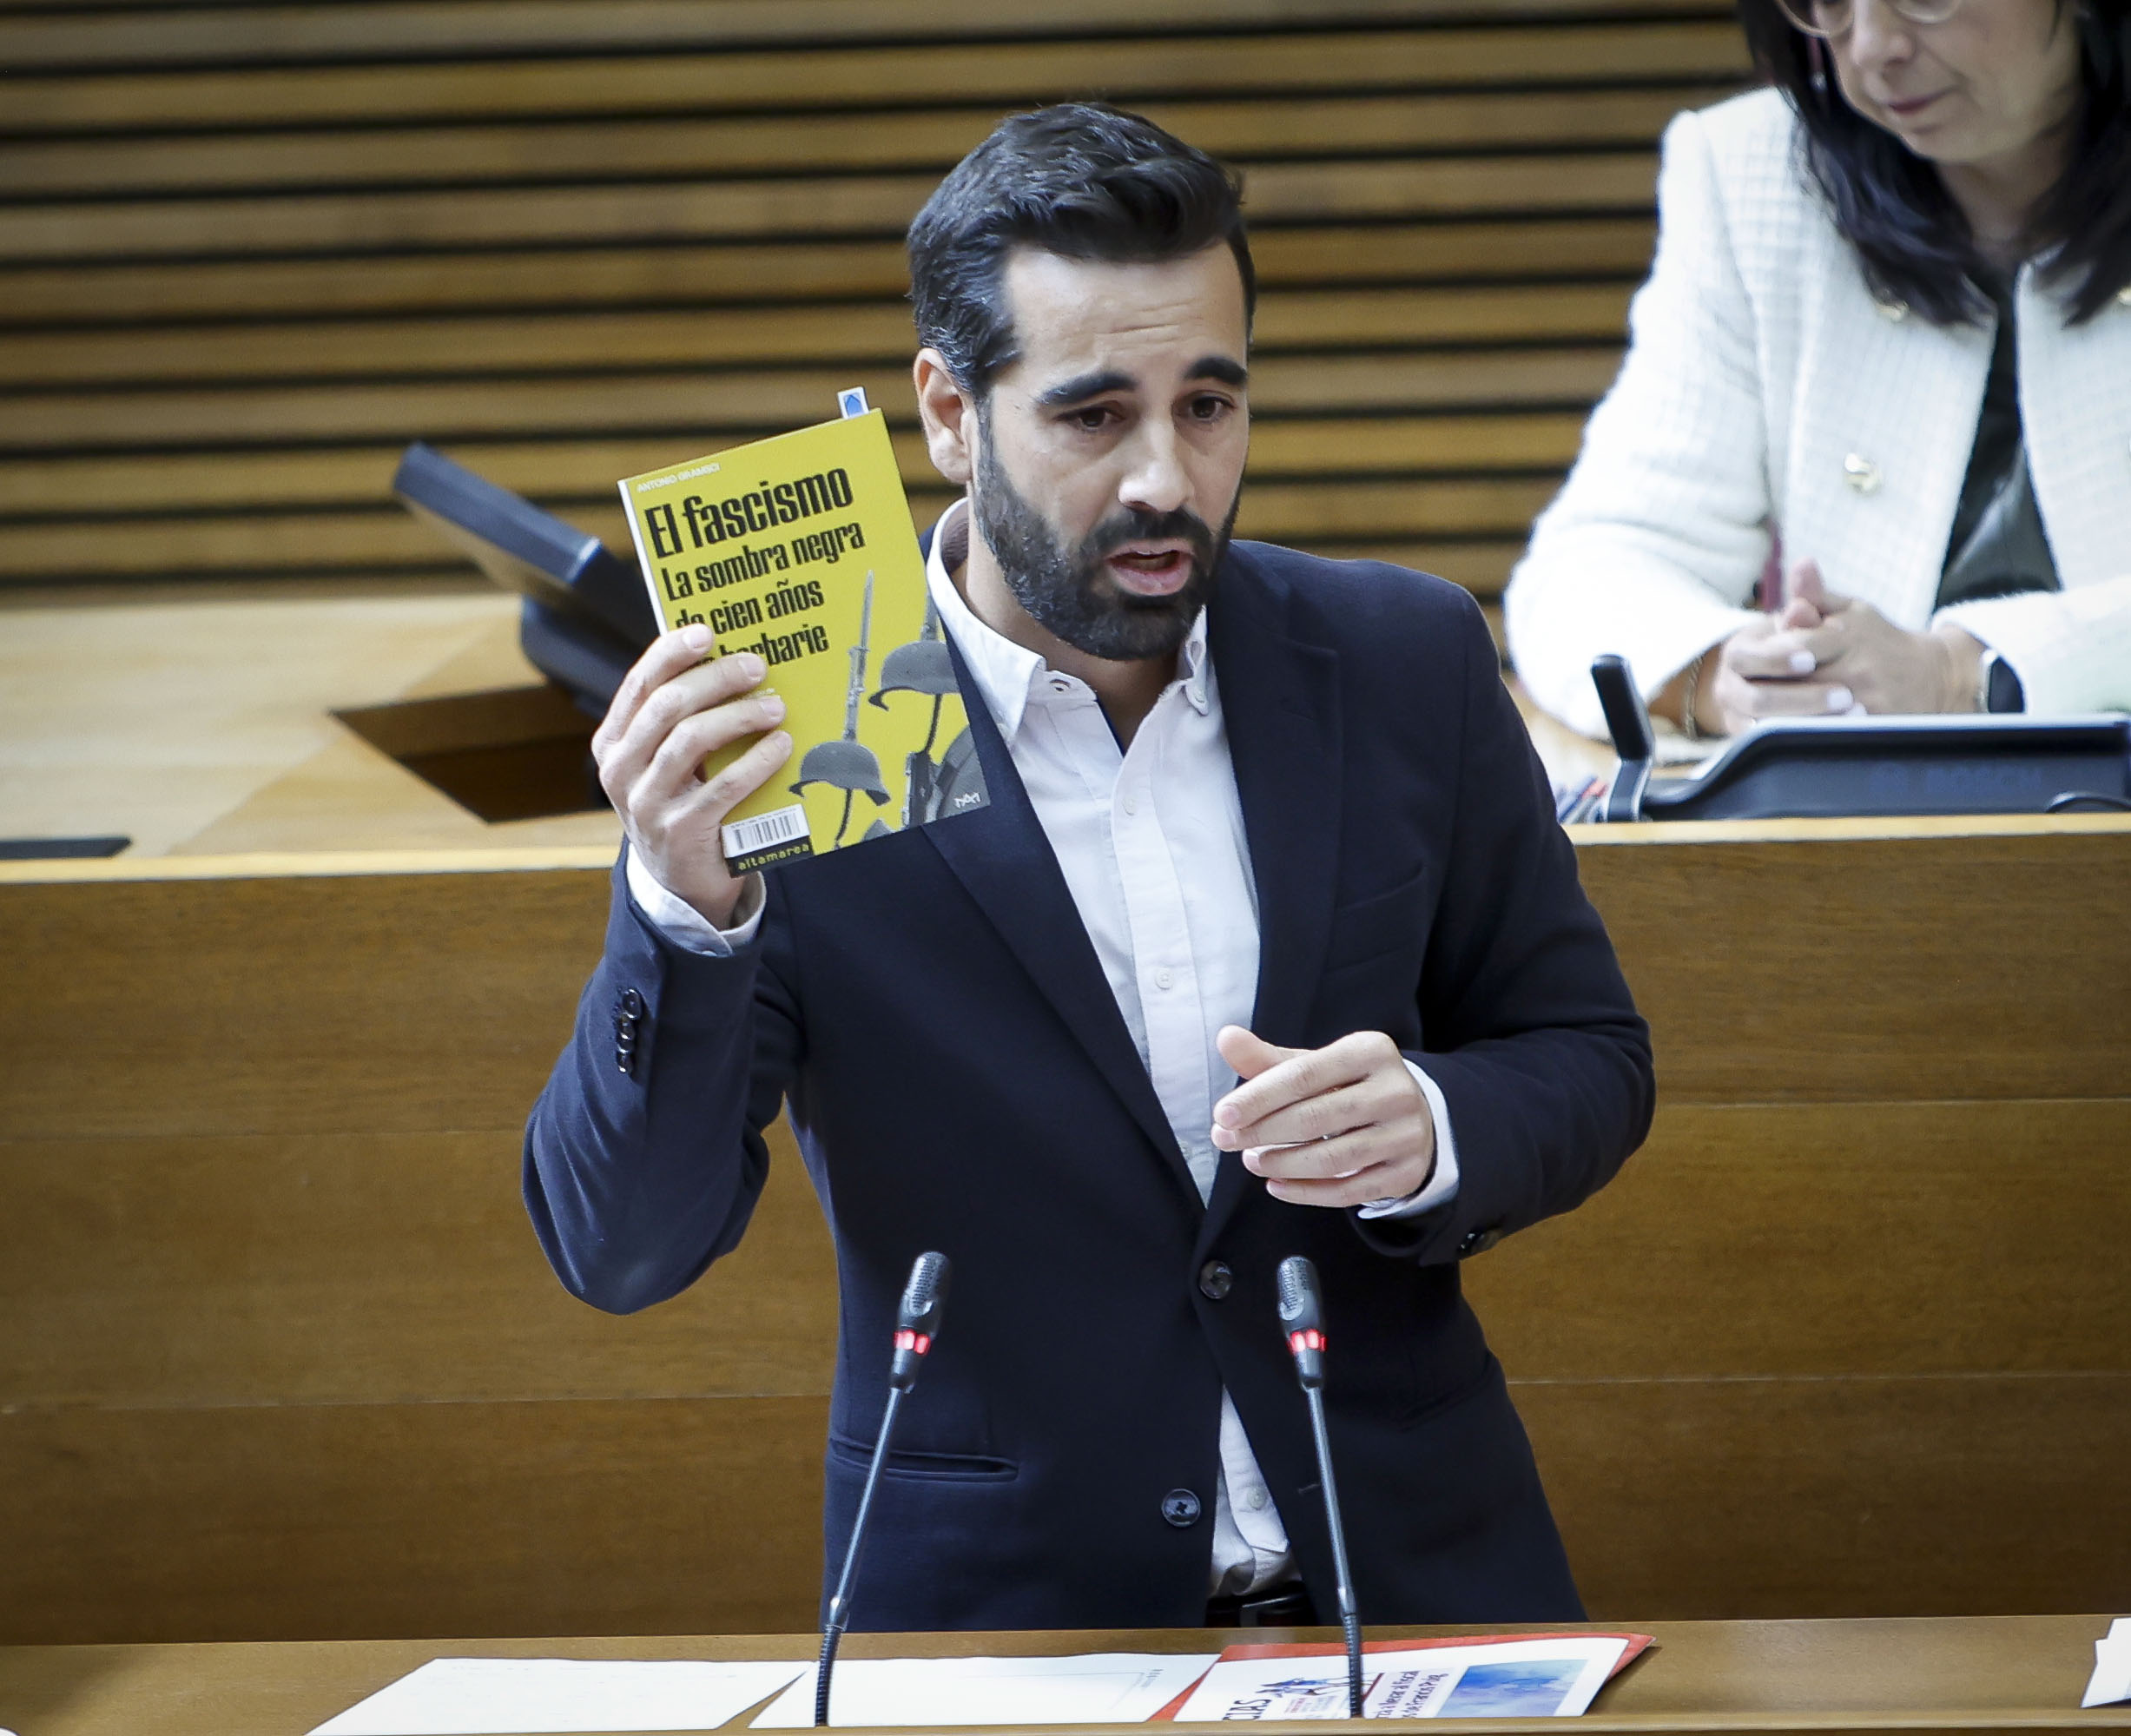 You are currently viewing Muñoz enlletgeix a Mazón “el seu cinisme i amoralitat” i lamenta que “en només 10 mesos haja aconseguit situar a la Comunitat Valenciana en el mapa europeu on ara es parla de la seua llei d’emblanquiment del franquisme”